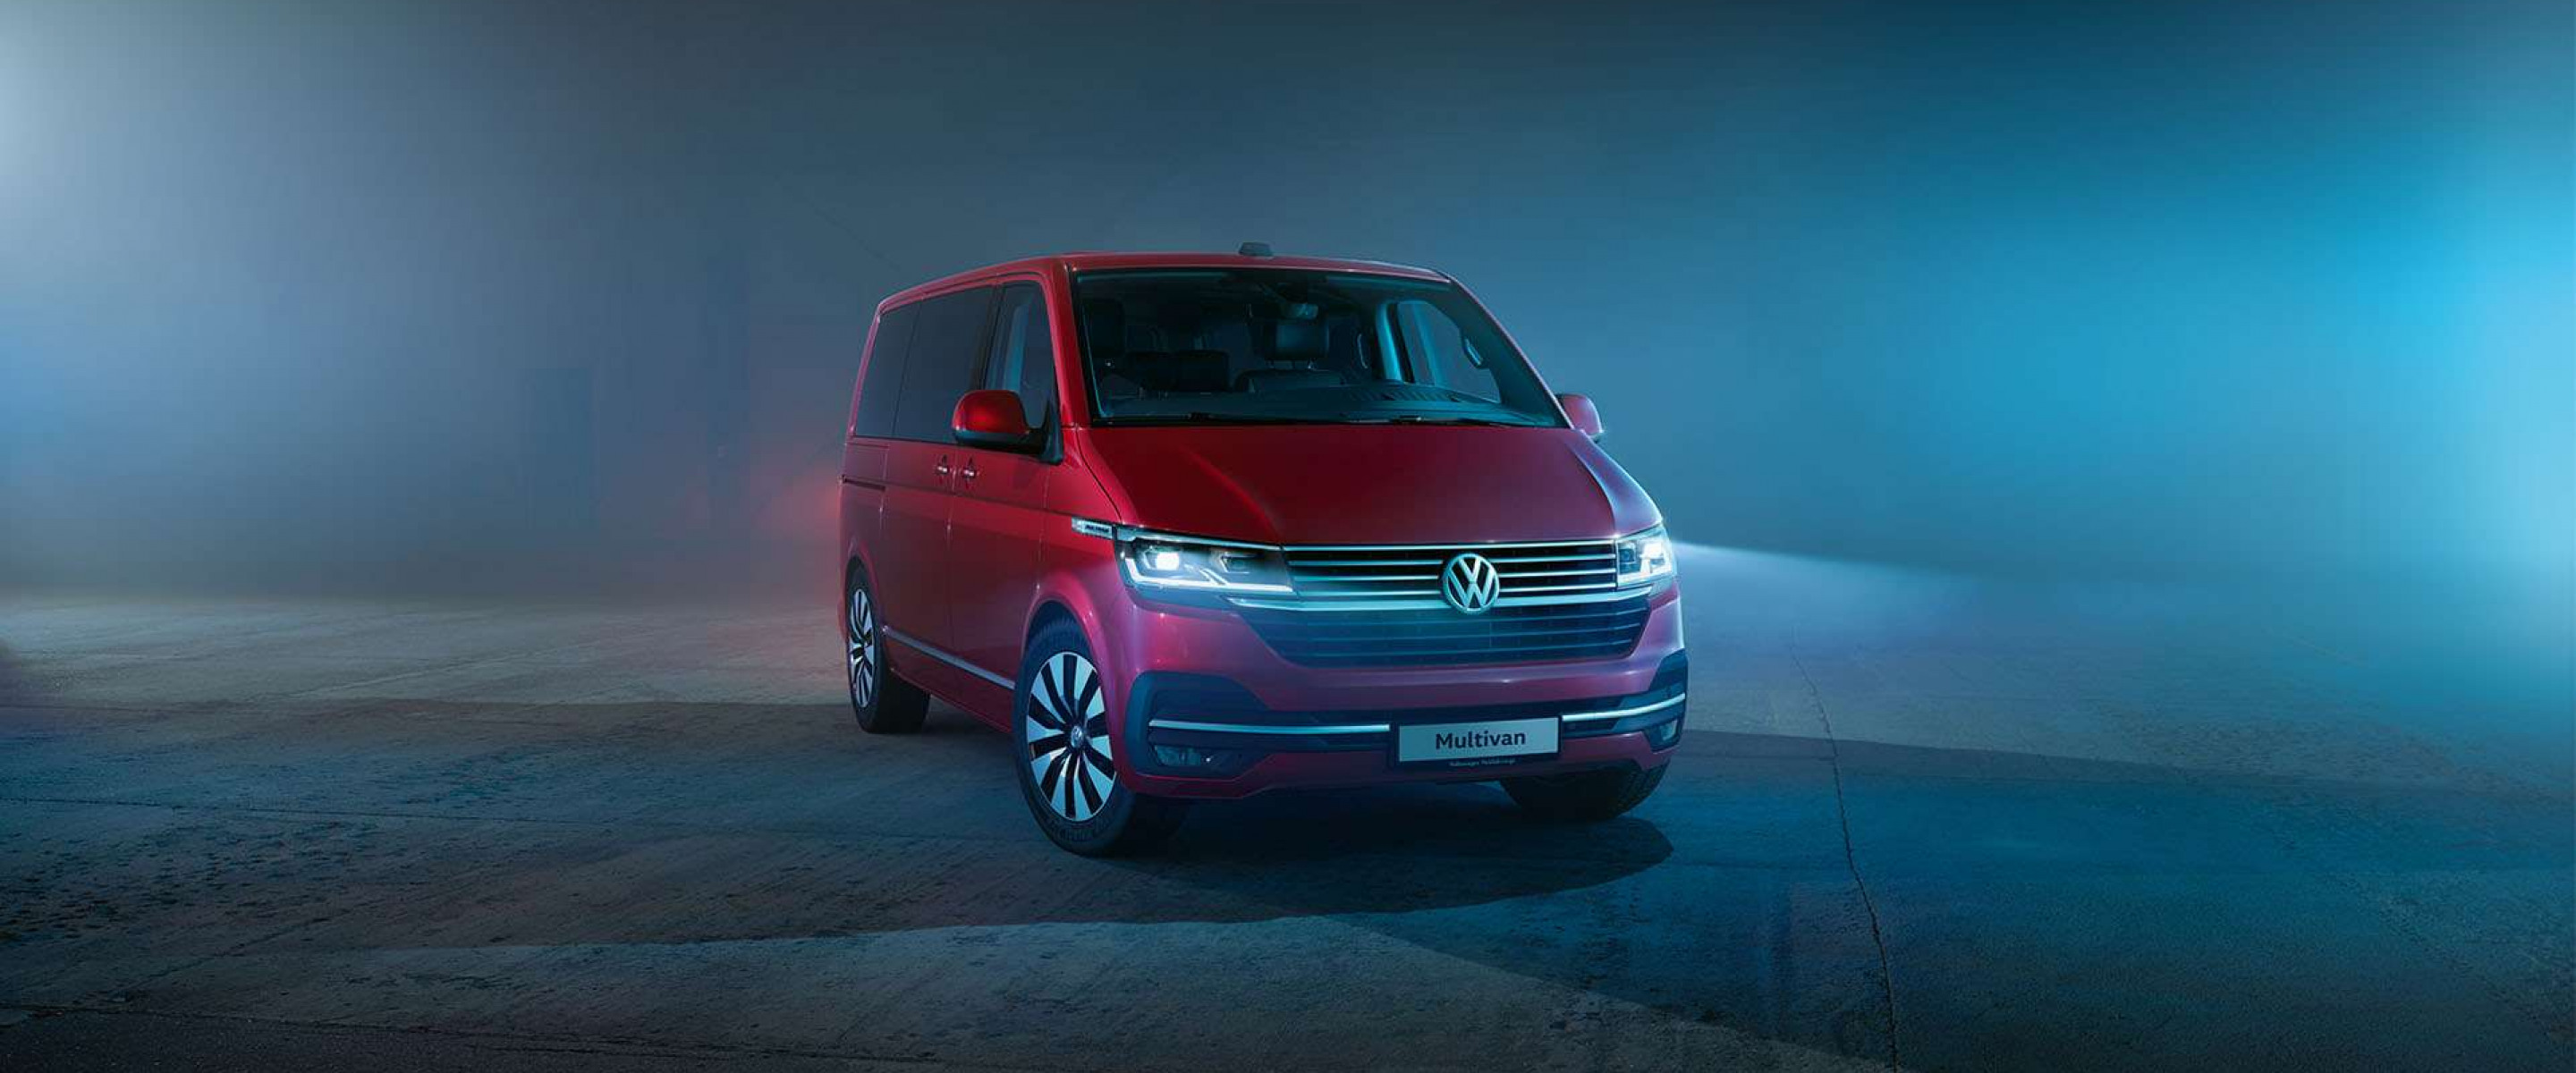 201909-Volkswagen-Multivan6.1-01.jpg